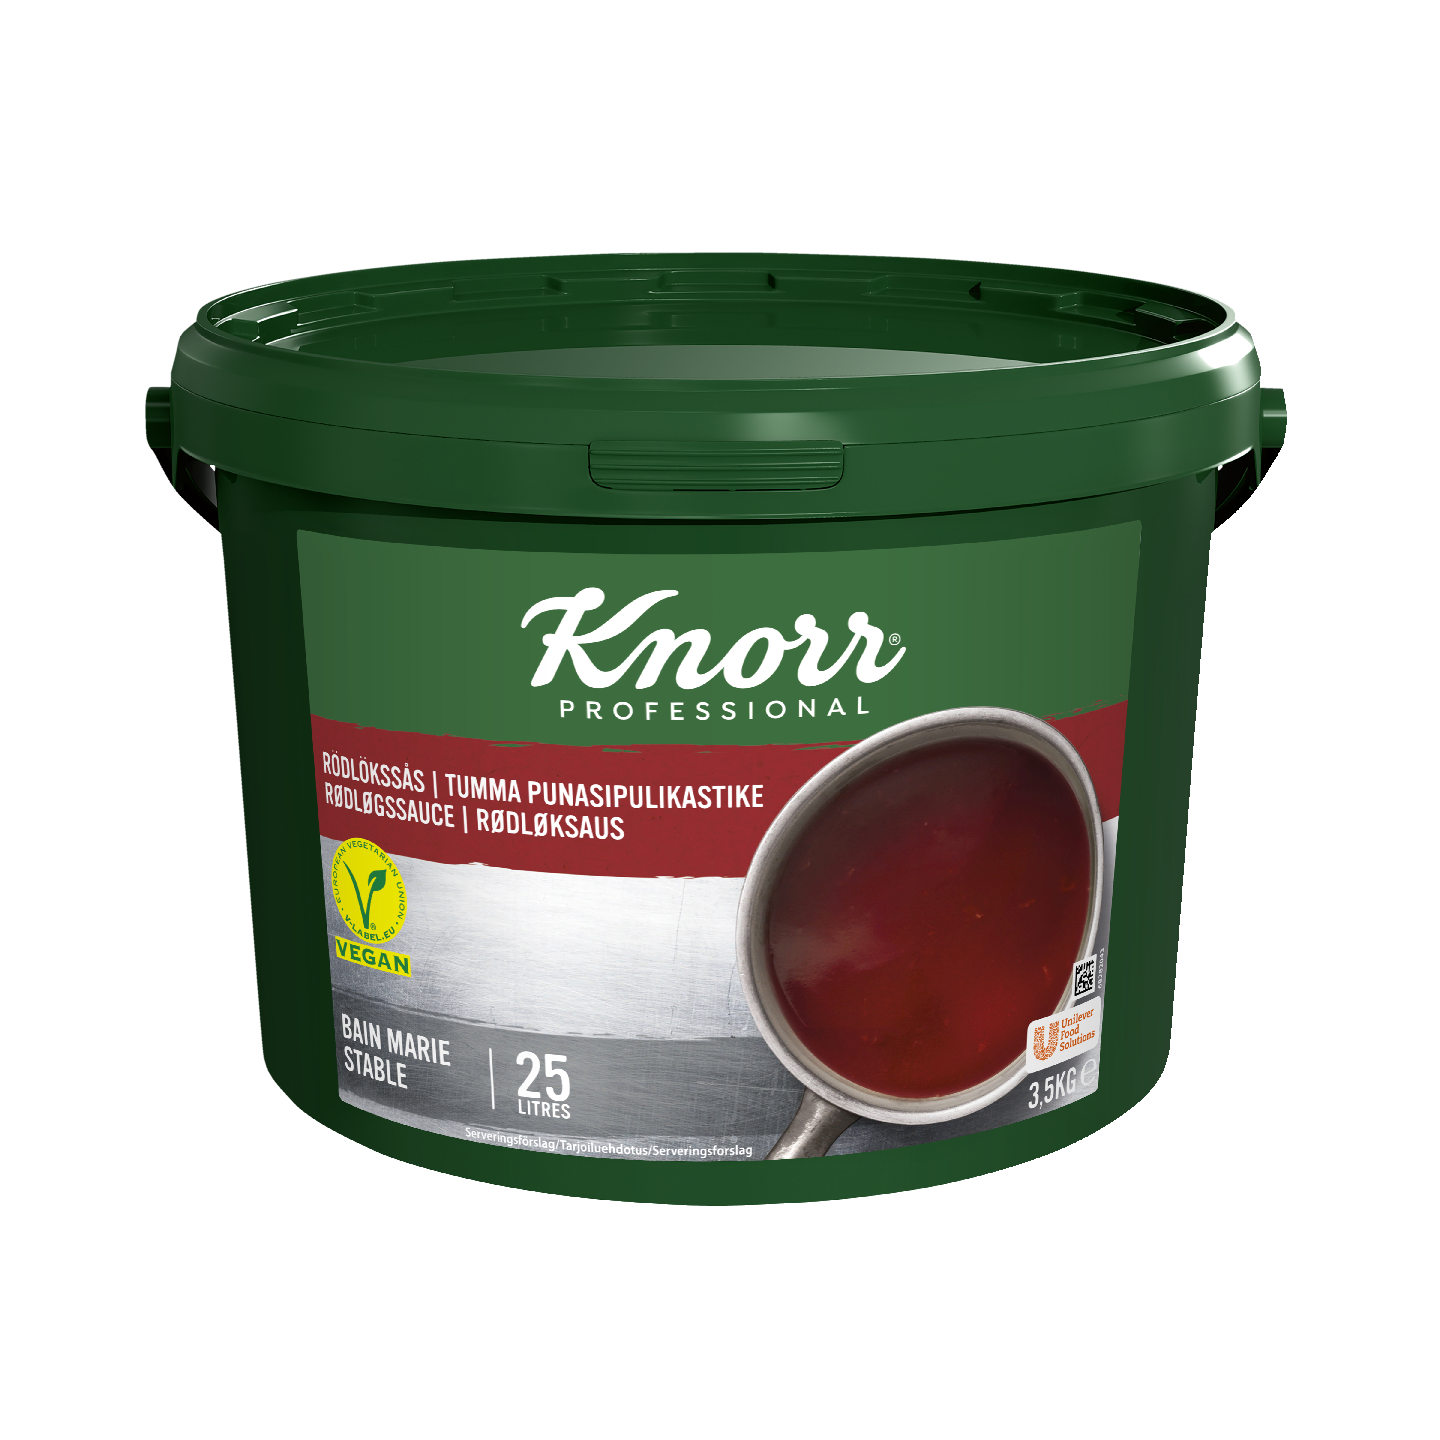 Knorr tumma punasipulikastike 3,5kg/25l